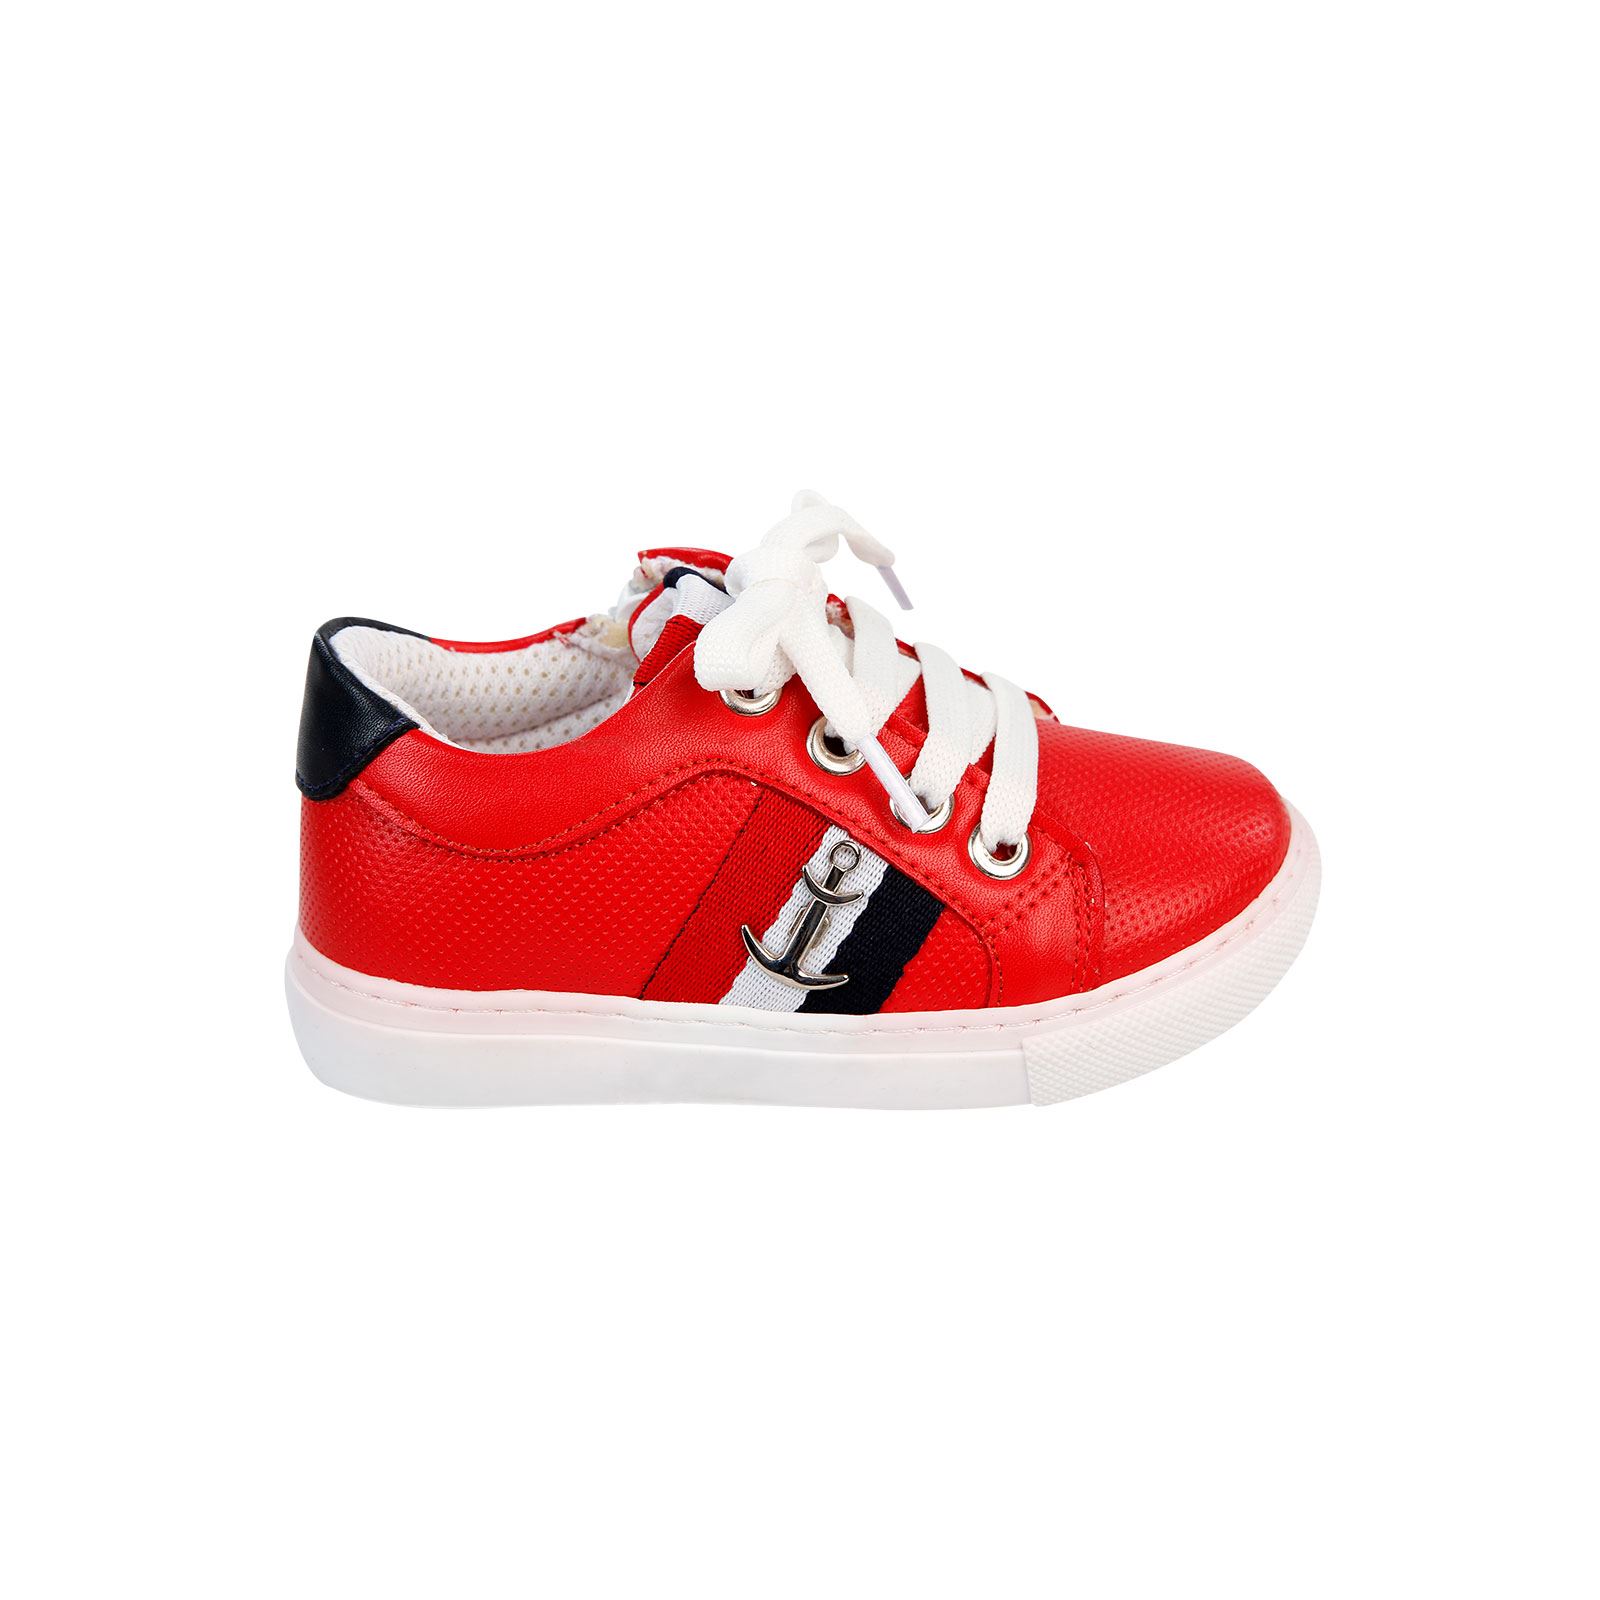 Callion Erkek Çocuk Spor Ayakkabı 21-25 Numara Kırmızı